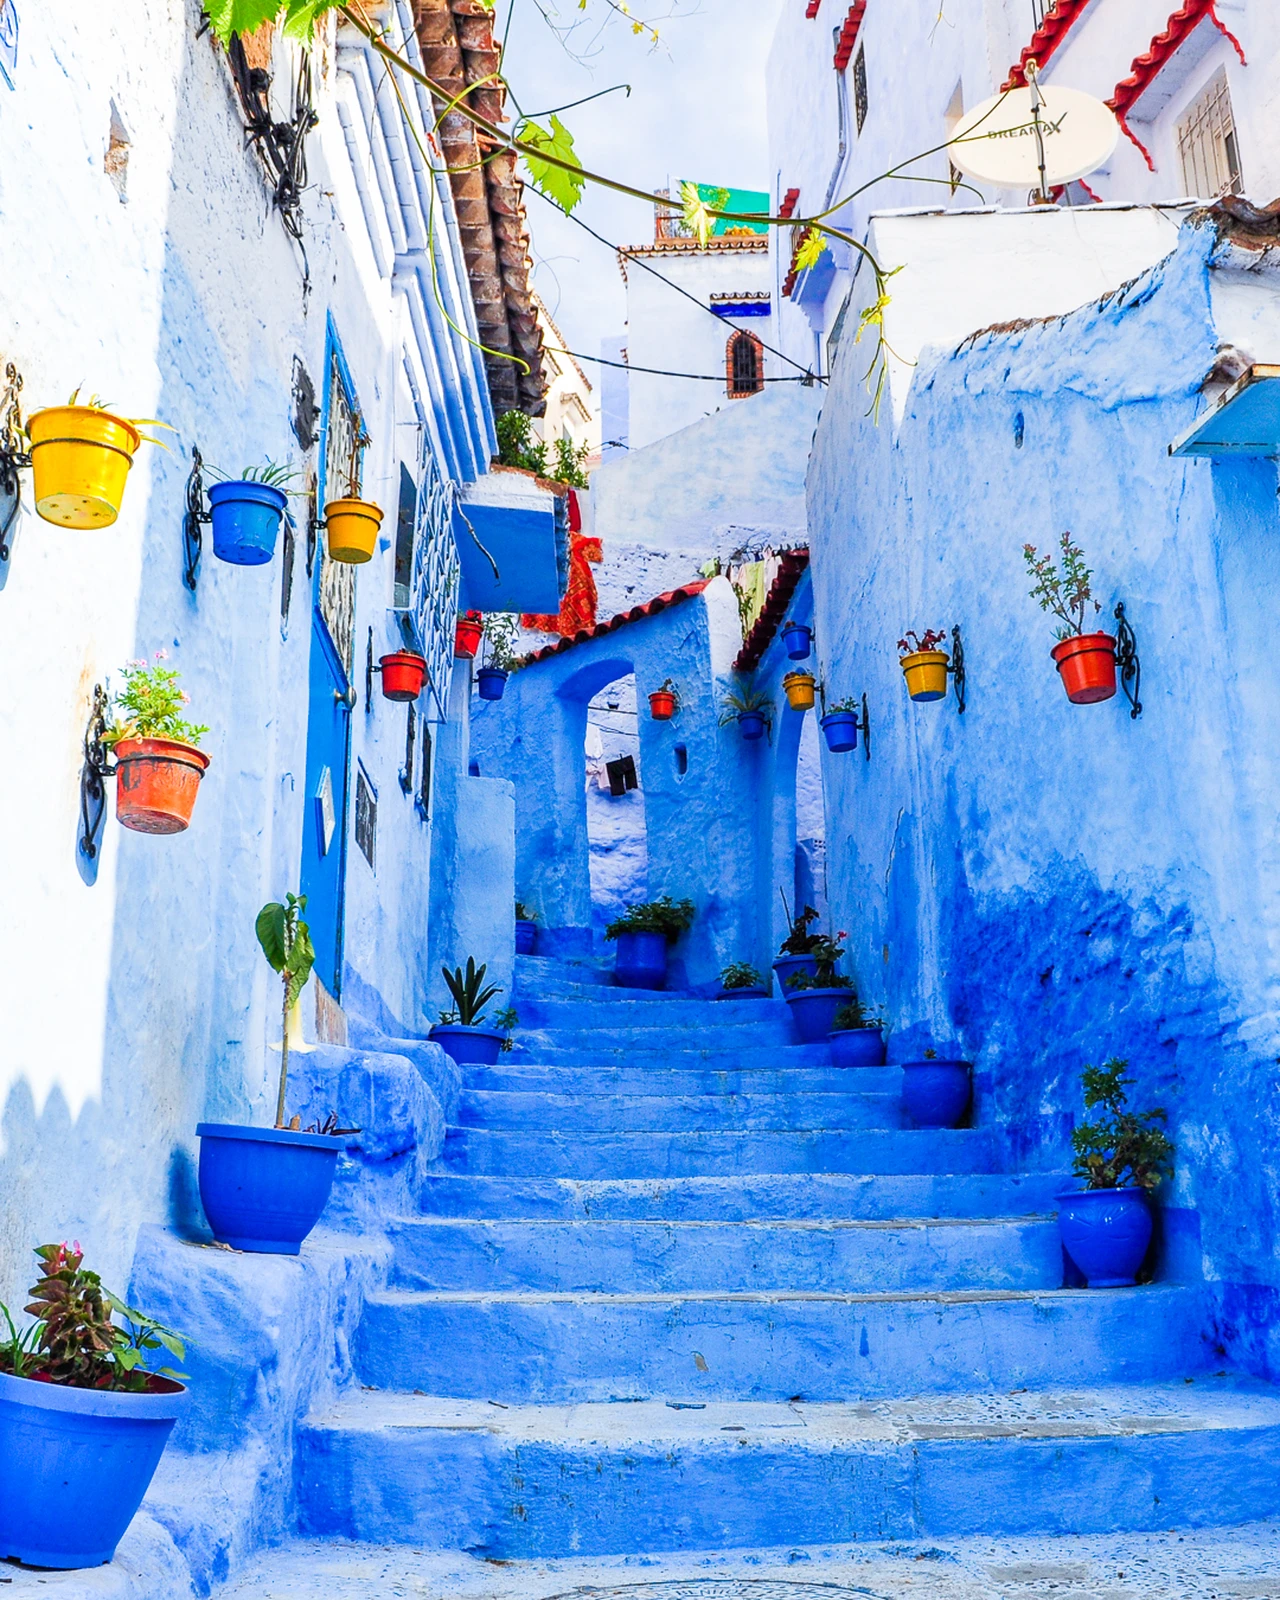 モロッコ どこを撮っても映える青い世界 Seiji Zekkeiが投稿したフォトブック Lemon8